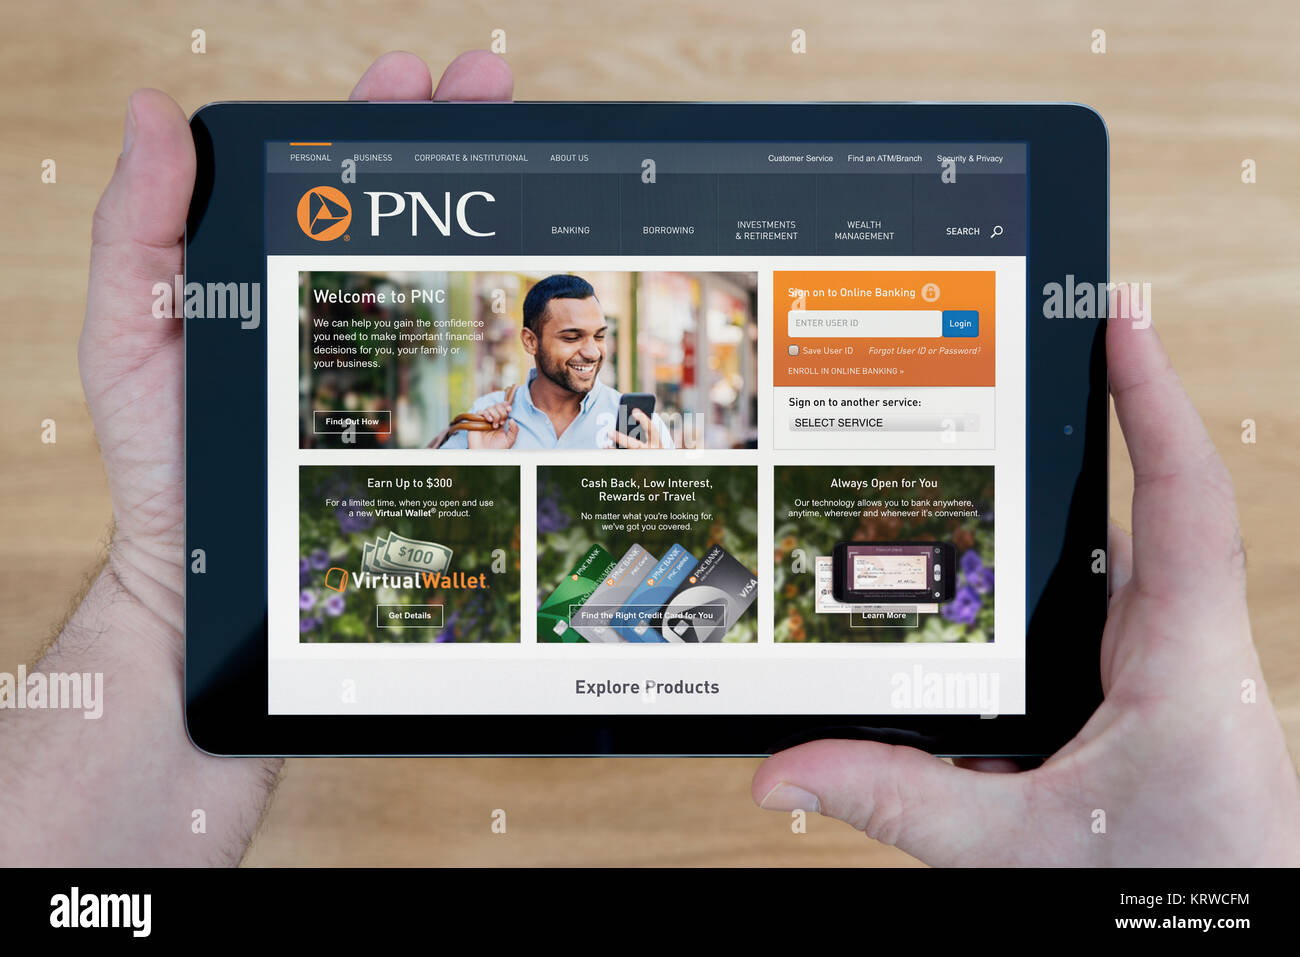 Un homme regarde les PNC Financial Services site sur son iPad tablet device, tourné contre une table en bois page contexte (usage éditorial uniquement) Banque D'Images